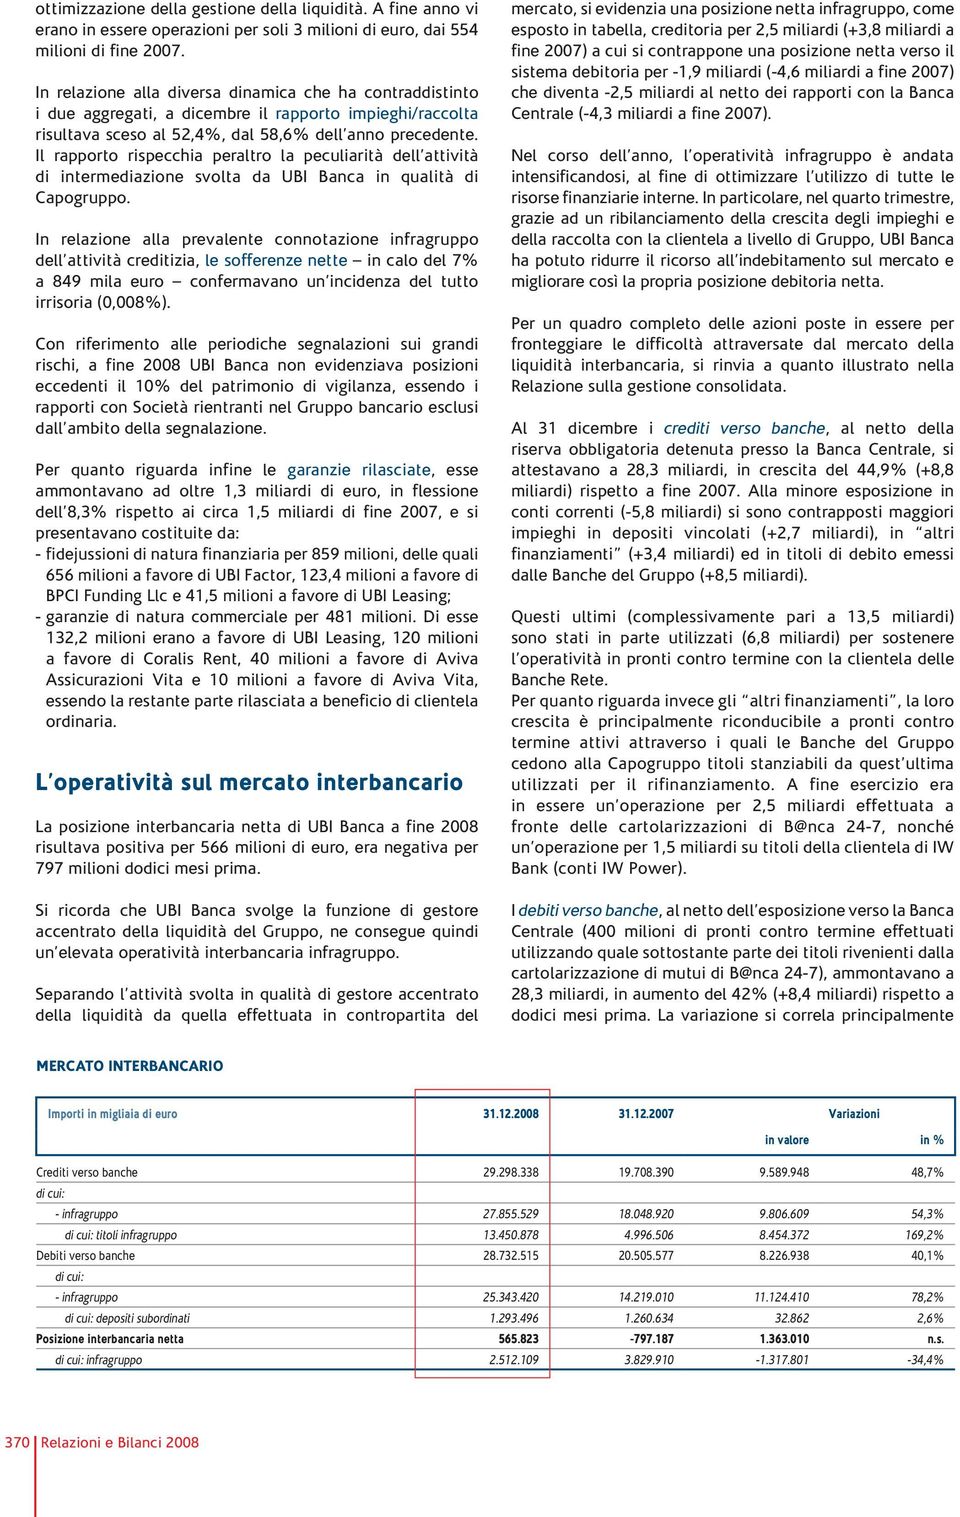 Il rapporto rispecchia peraltro la peculiarità dell attività di intermediazione svolta da UBI Banca in qualità di Capogruppo.